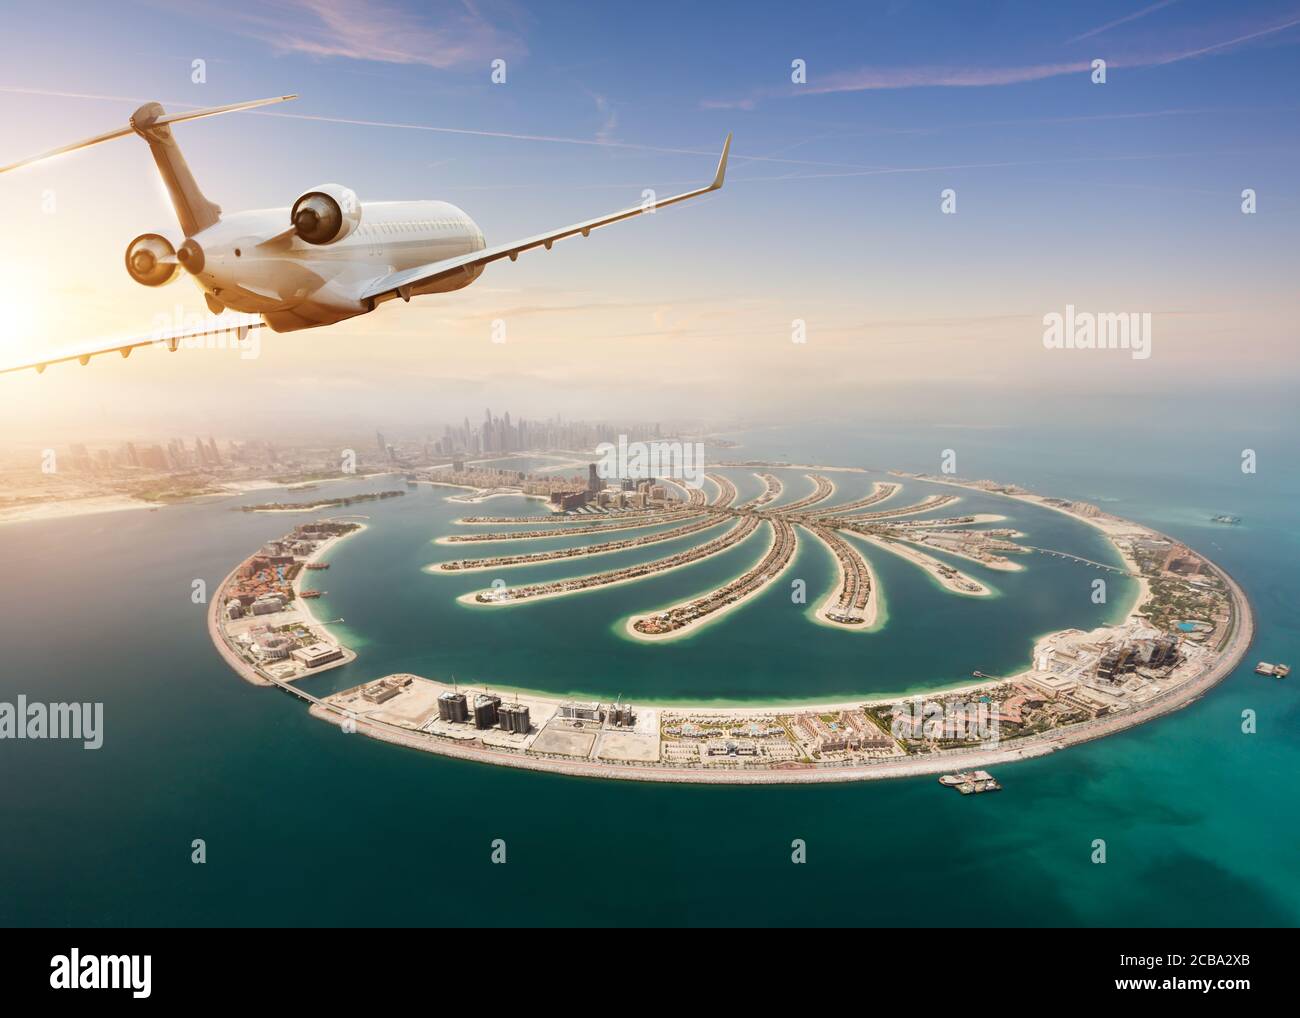 Vol privé en avion au-dessus de la ville de Dubaï. Mode de transport moderne et le plus rapide, vie d'affaires et style de vie de luxe Banque D'Images